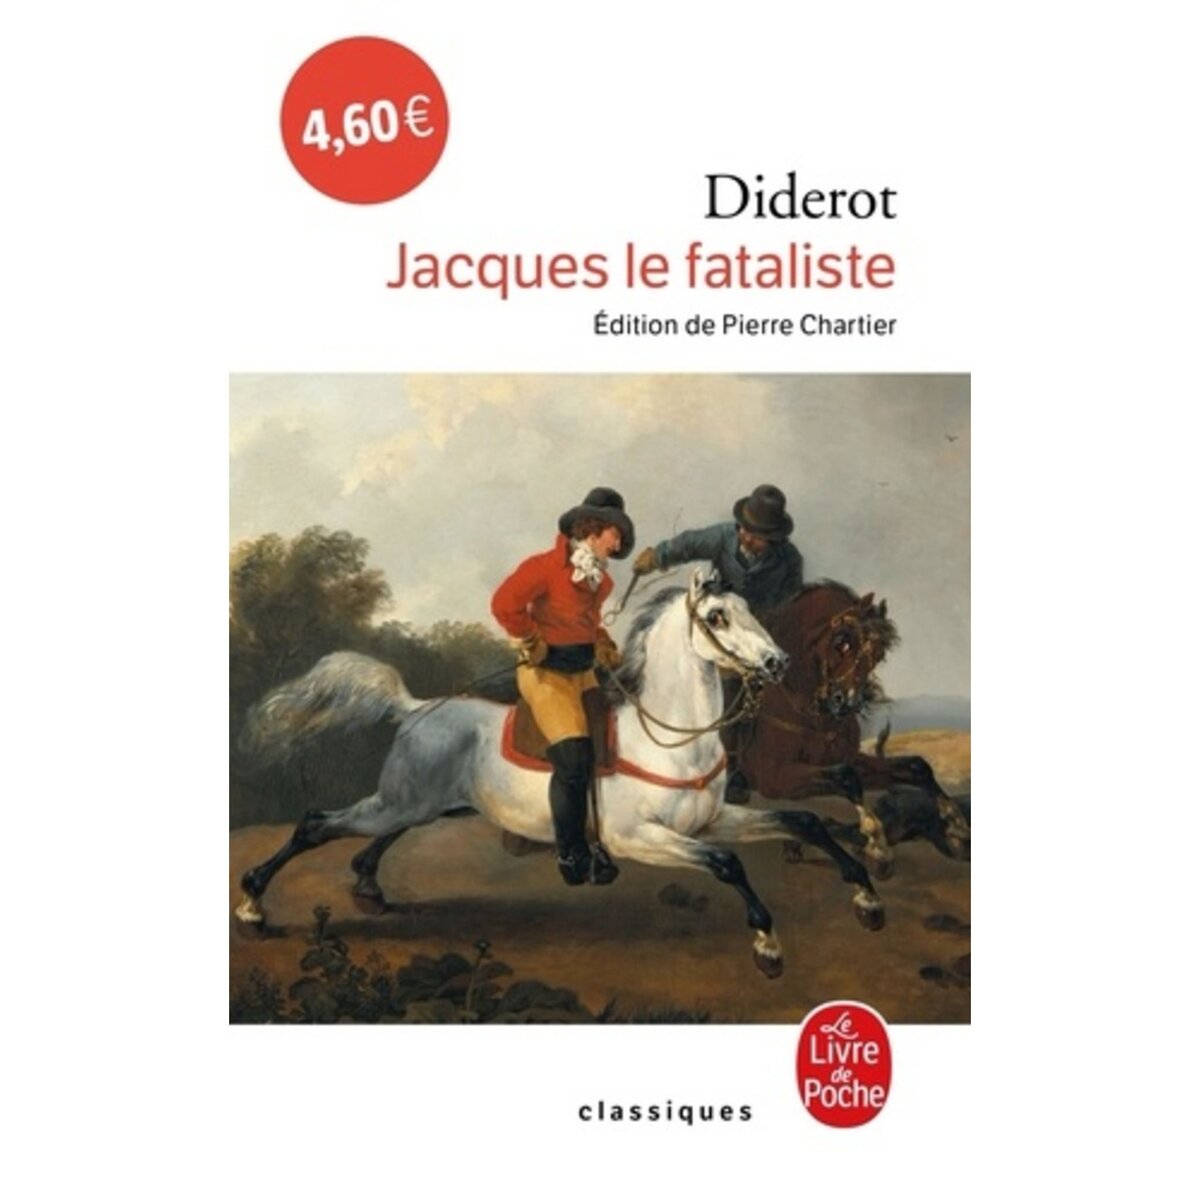  JACQUES LE FATALISTE, Diderot Denis